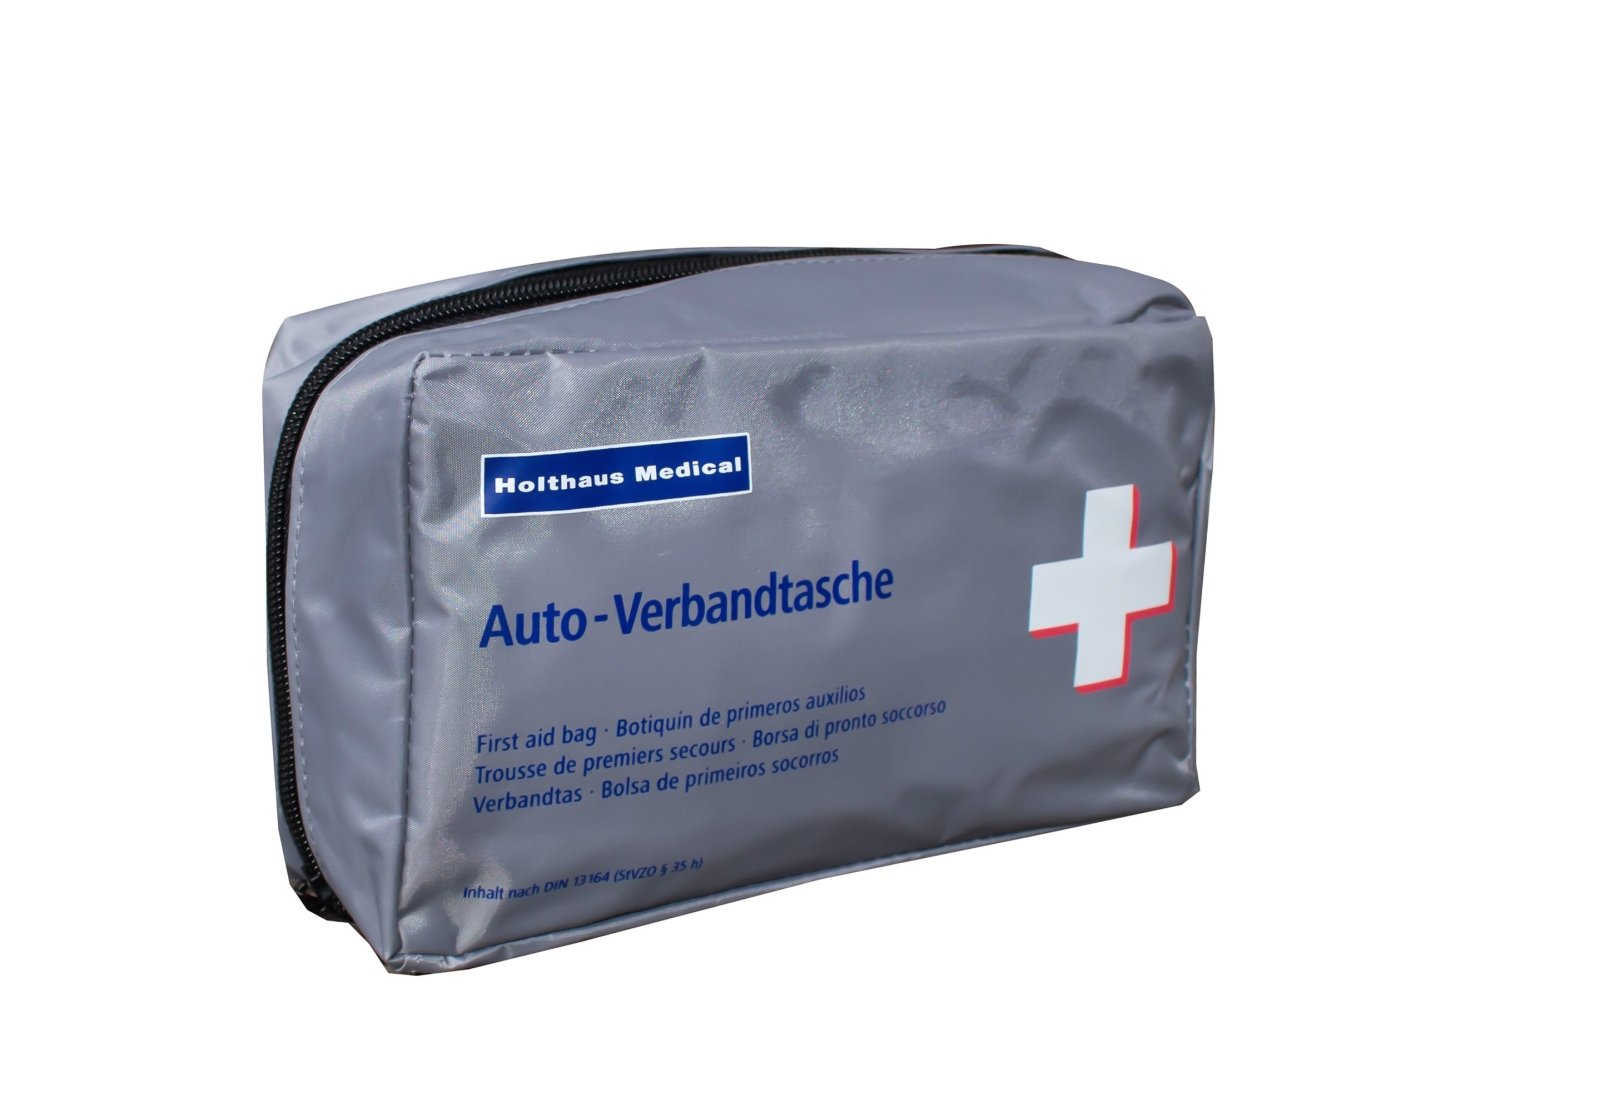 Holthaus Medical Kfz-Verbandtasche Auto-Verbandkasten mit Malteser